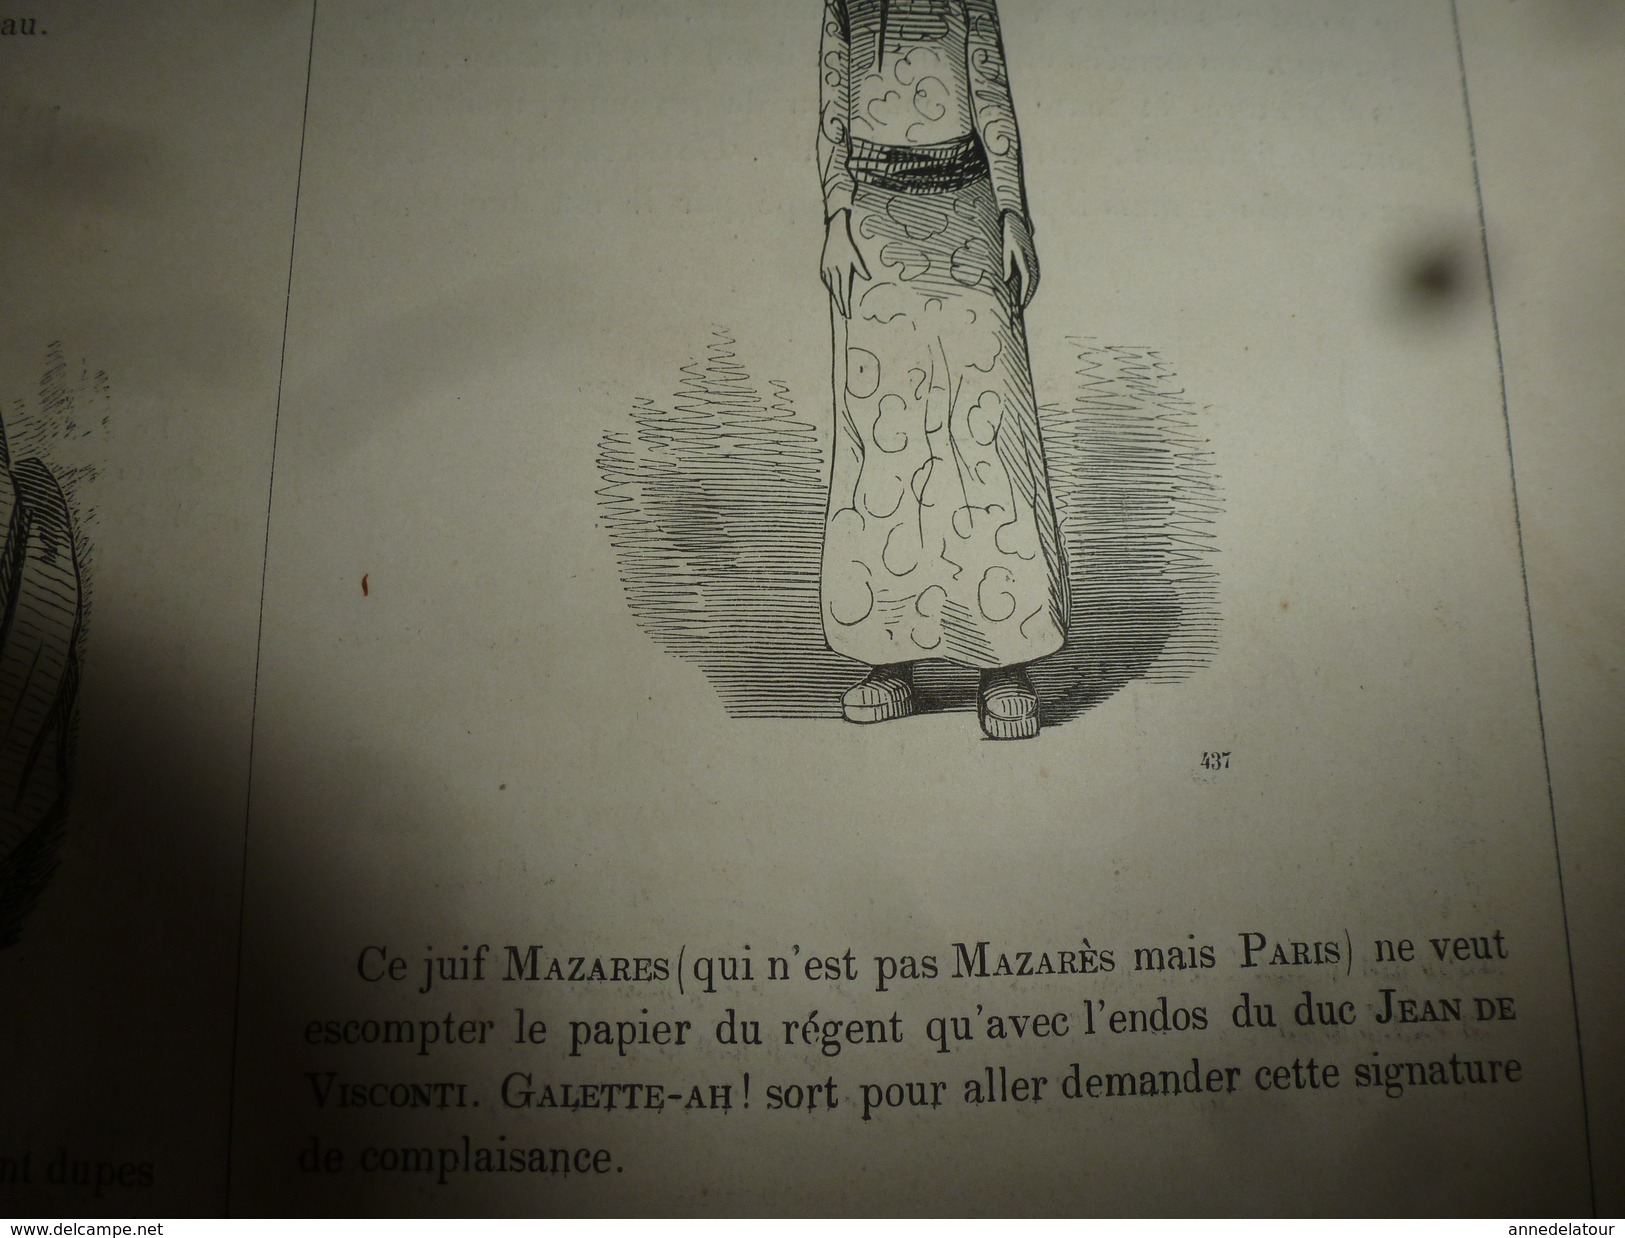 1840 MUSEE PHILIPON :Paris le bohémien,Galimatias dramatique par Joseph Bouche-Hardie, Dessins d'Eustache